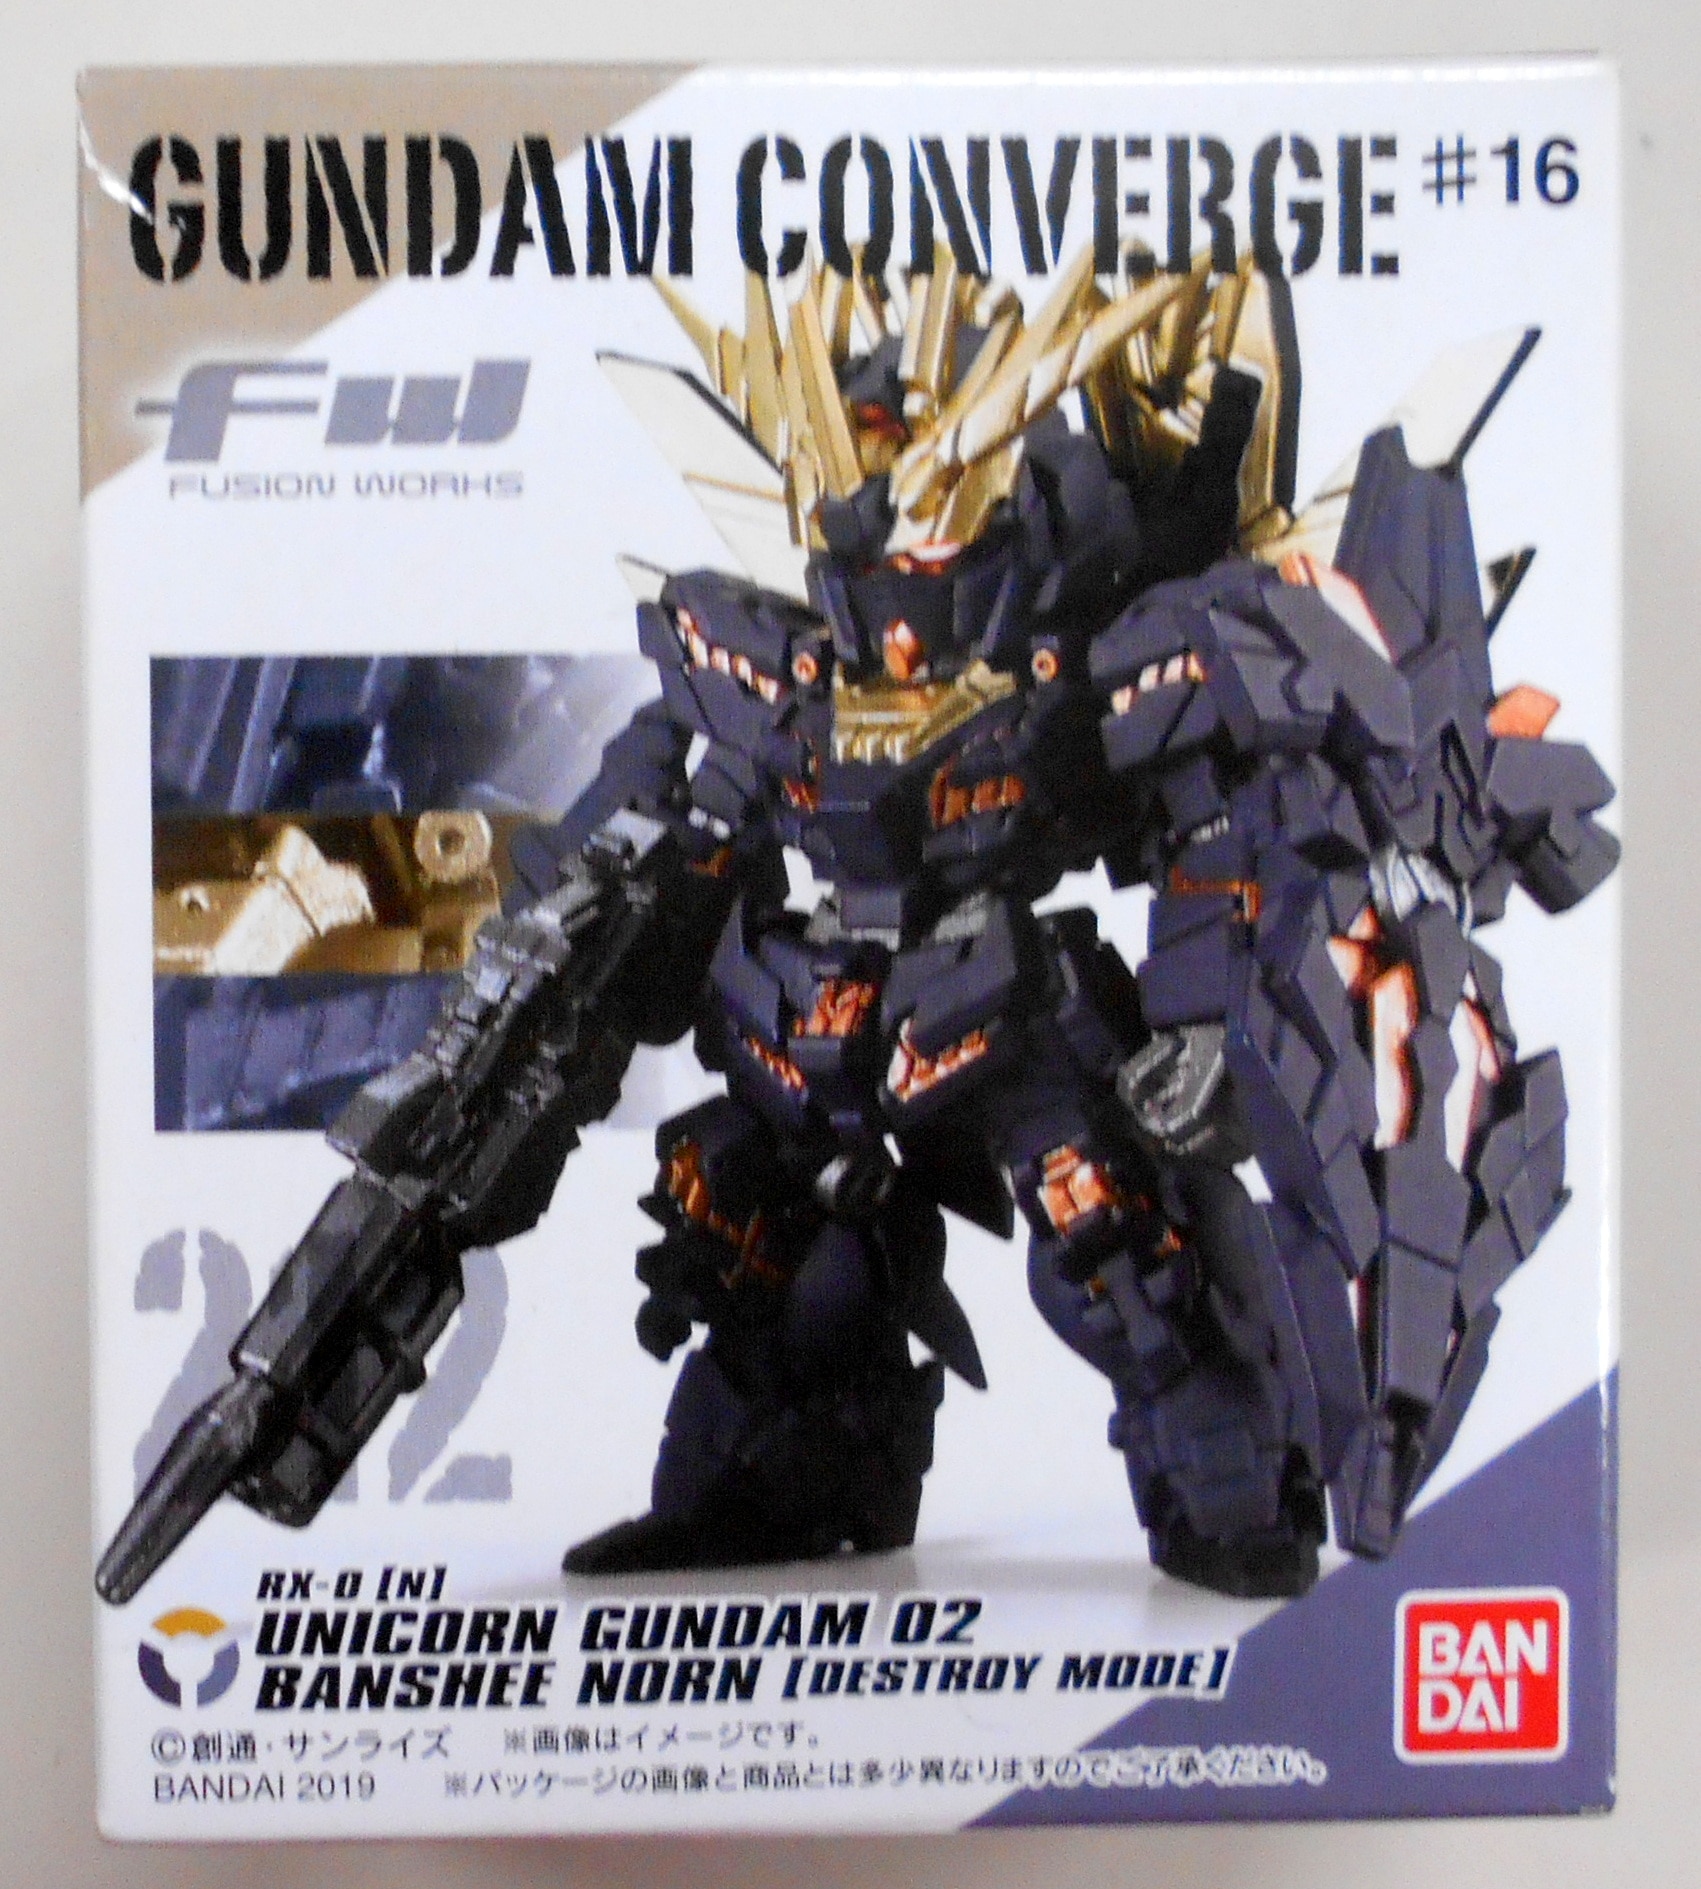 バンダイ Fw Gundam Converge 16 ユニコーンガンダム2号機 バンシィ ノルン デストロイモード 212 まんだらけ Mandarake